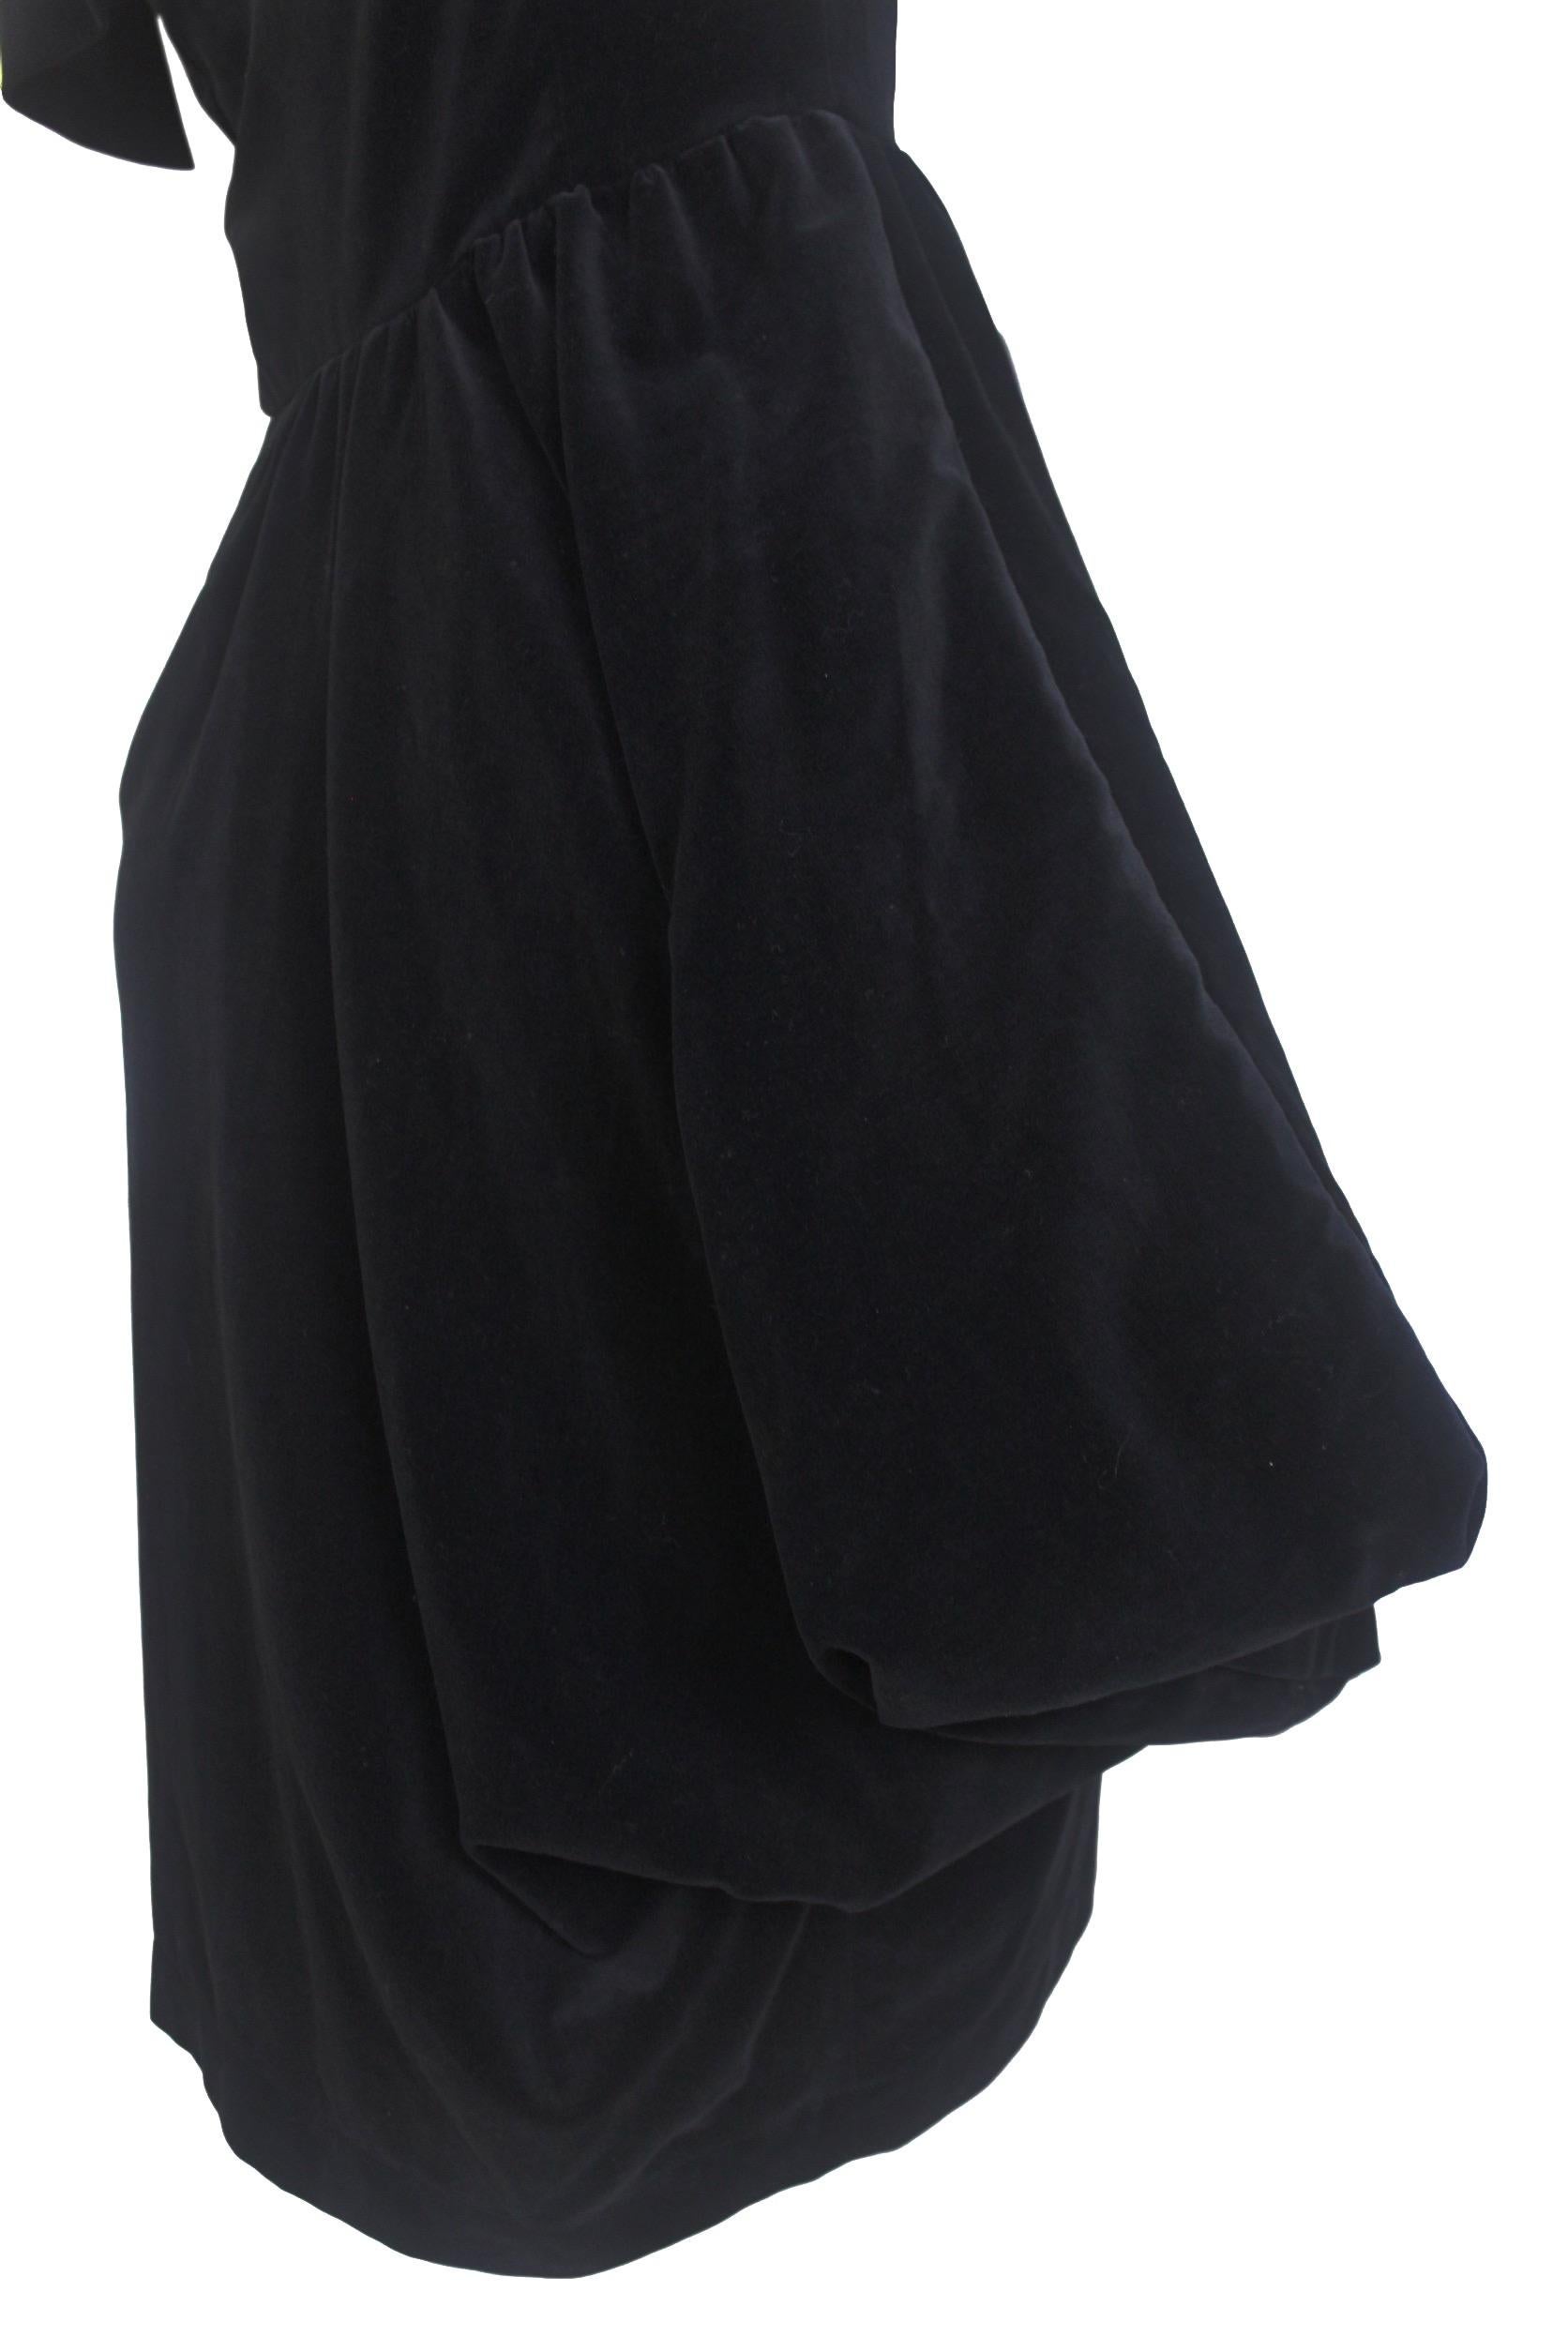 Comme des Garcons Noir Vintage  SS 1989 Dior Esque Cotton Velvet Dress  For Sale 1